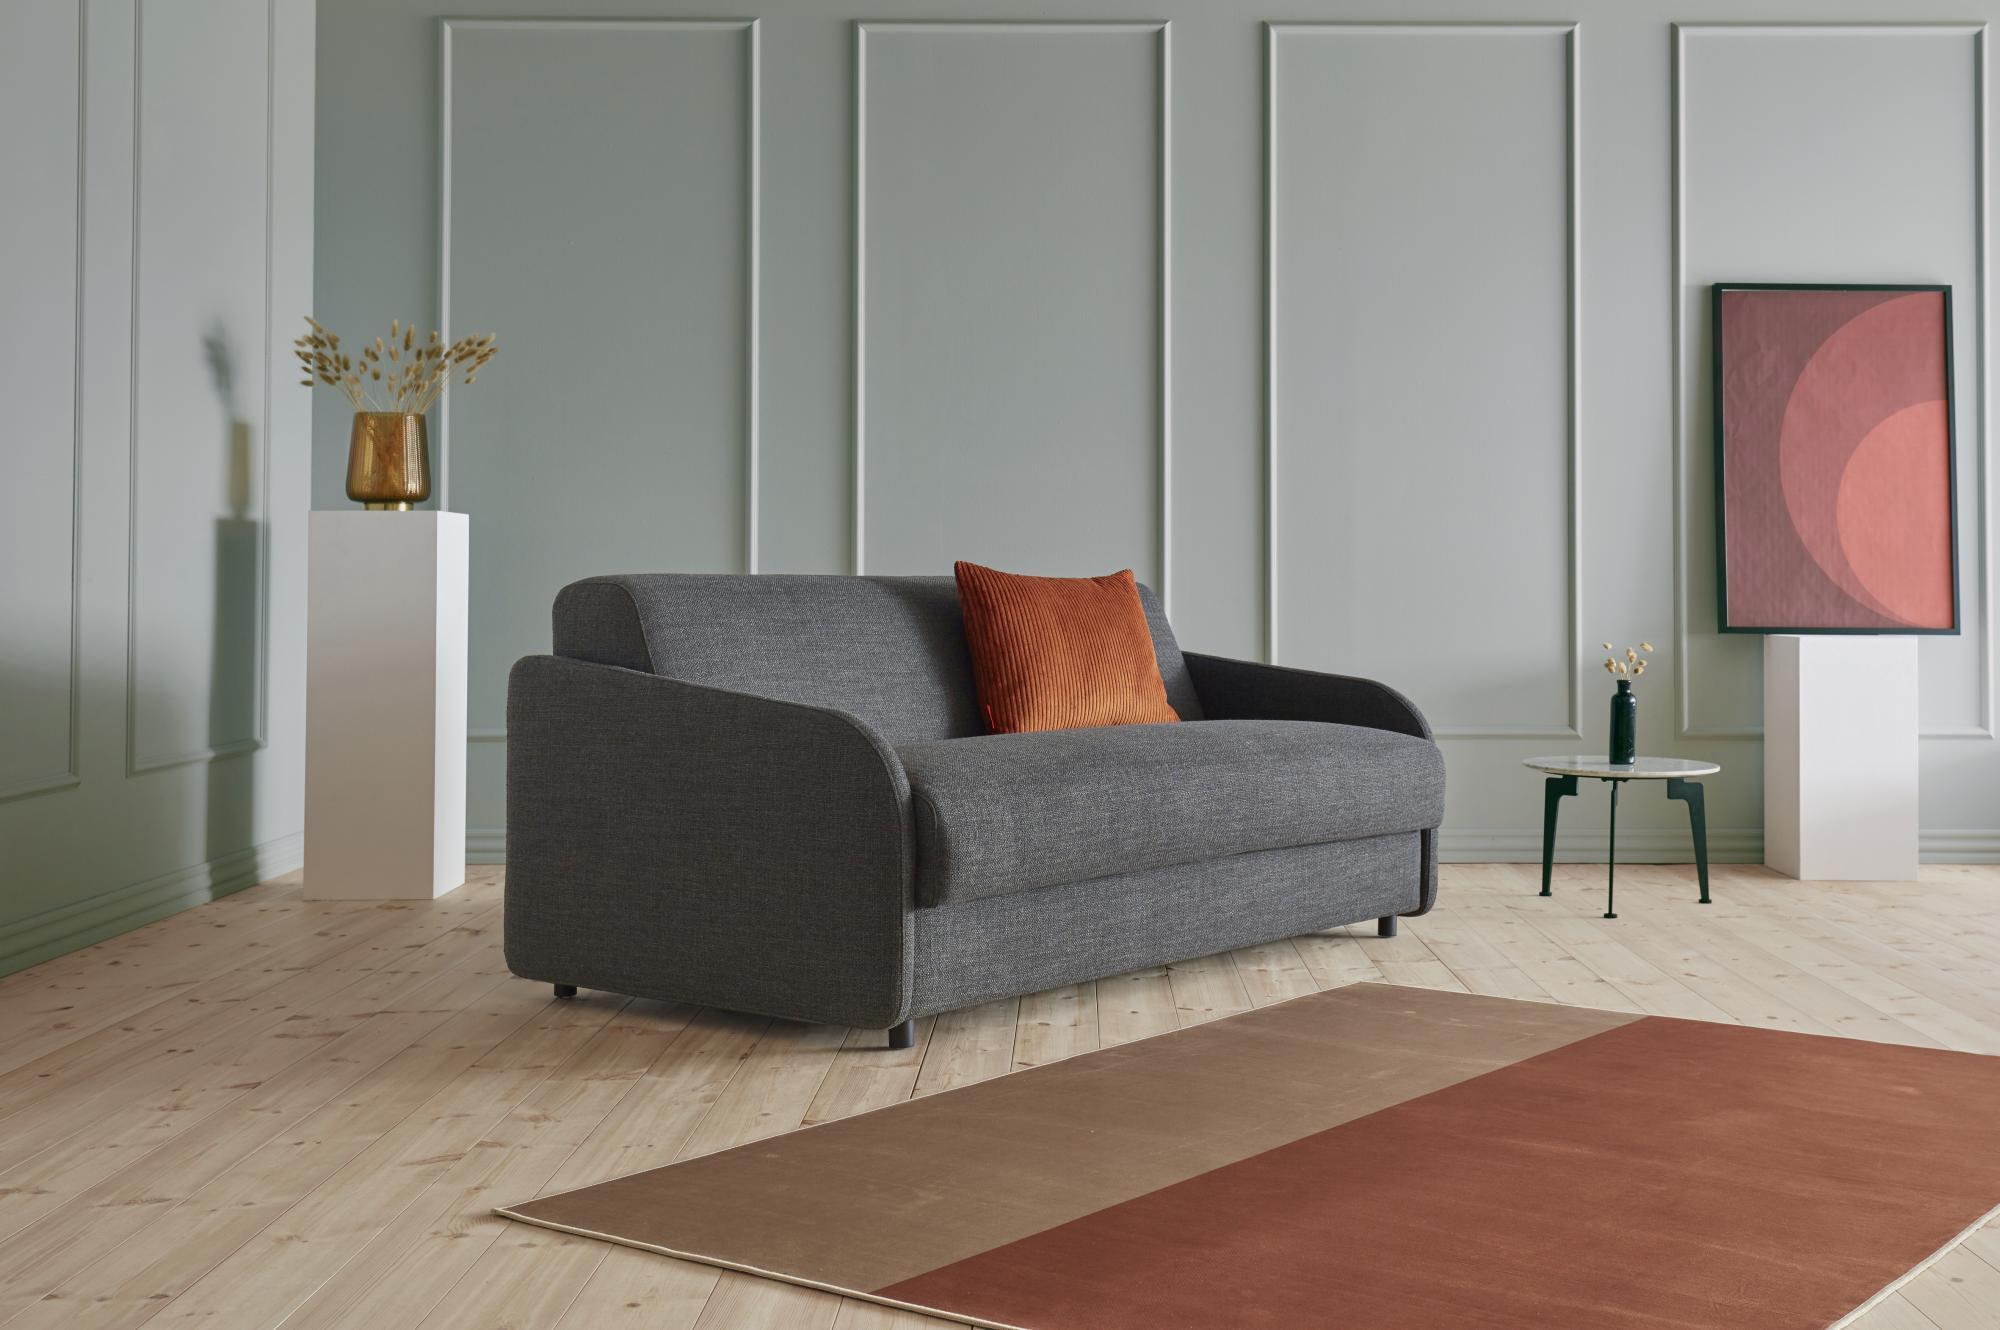 eivor-sofa-bed-577-e1